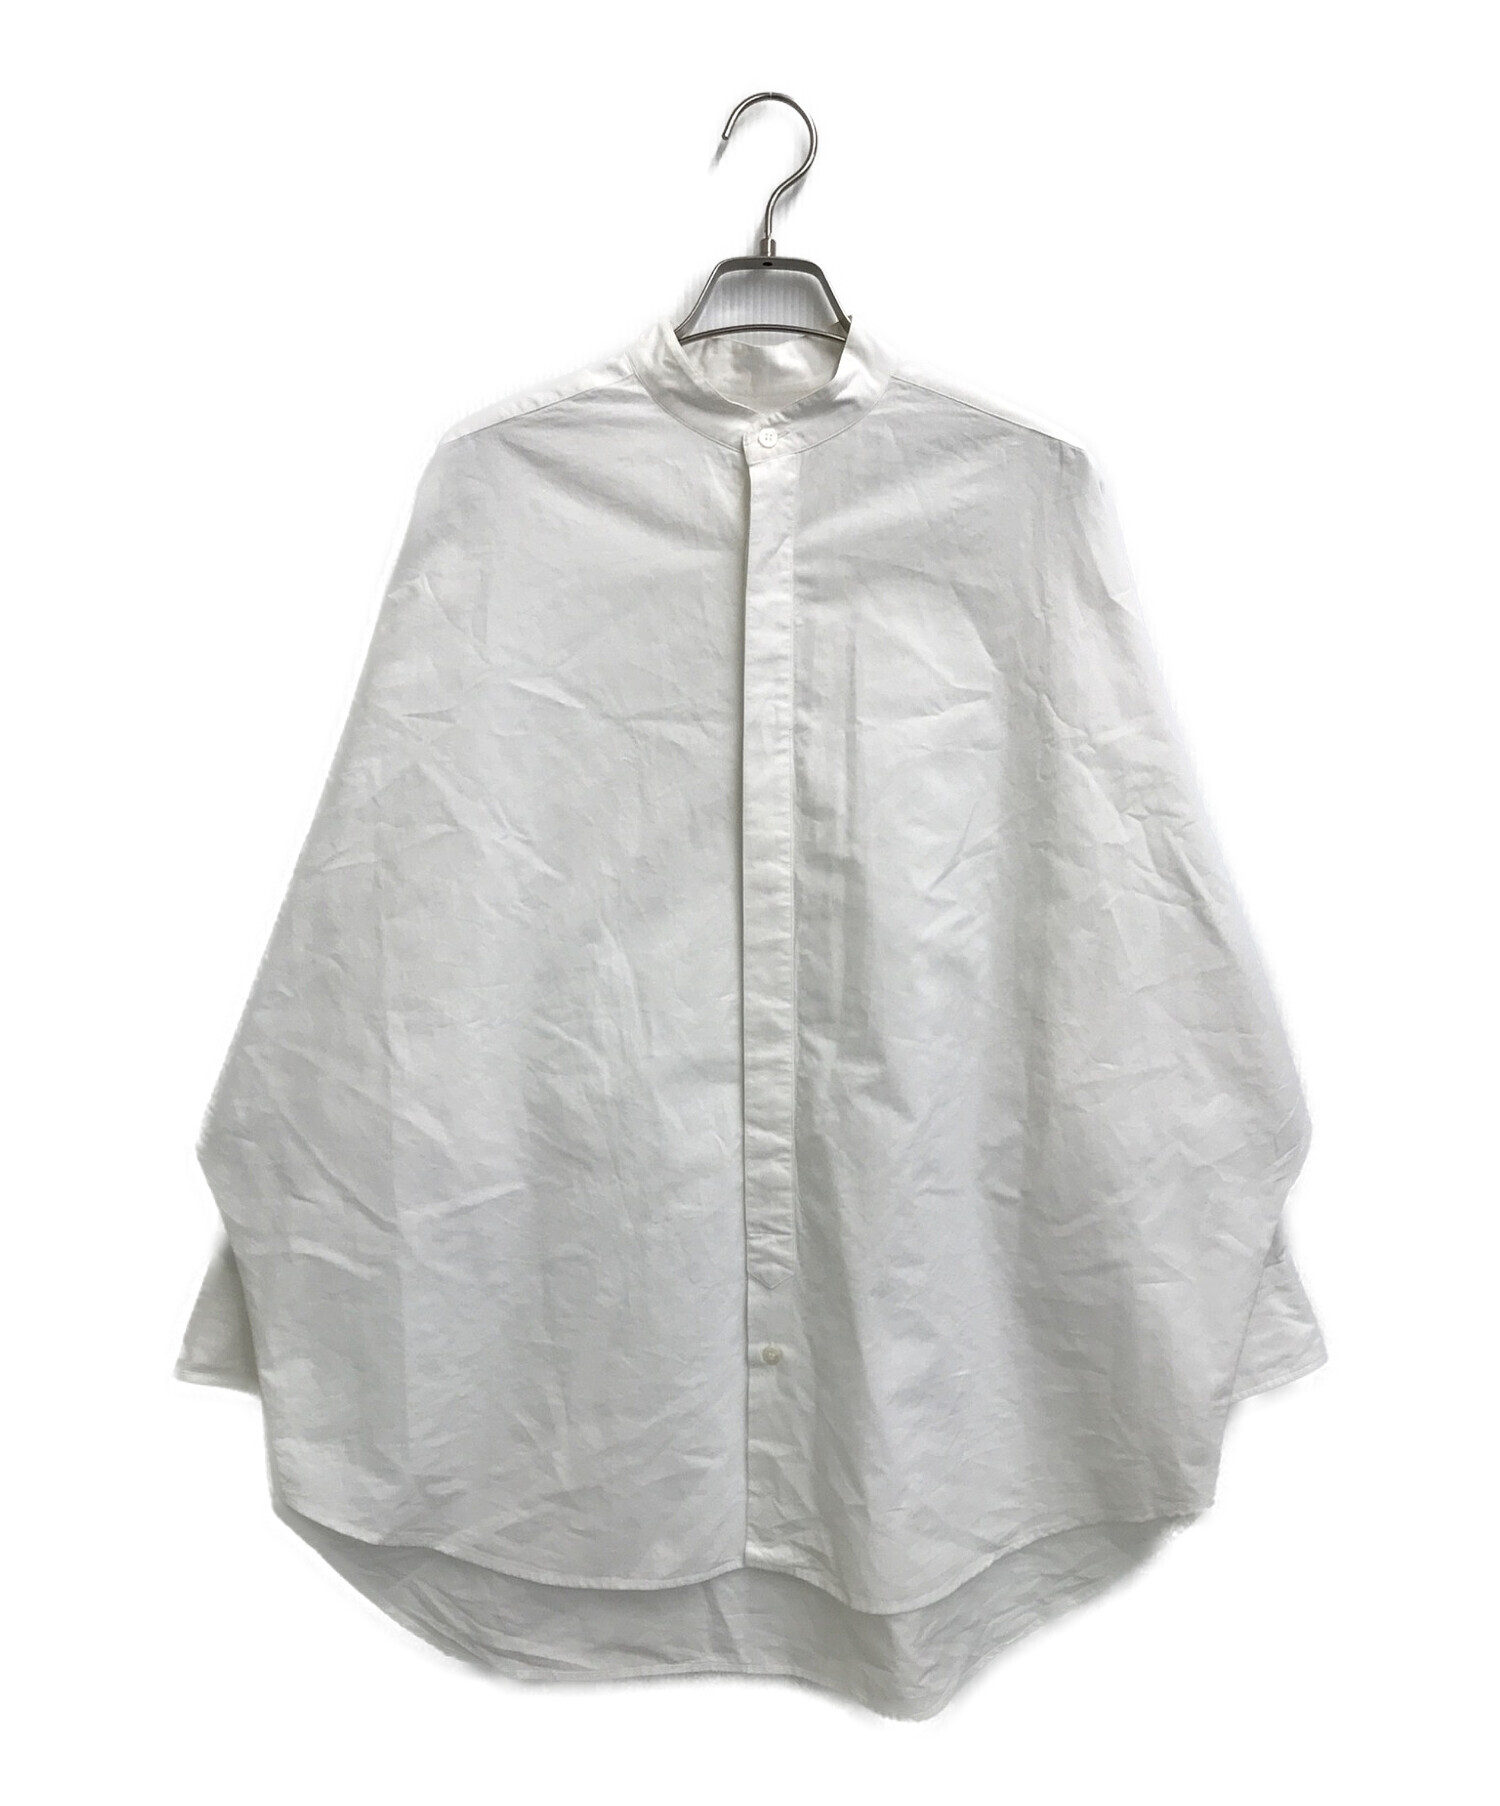 UNION LAUNCH (ユニオンランチ) ドルマンドレスシャツ ホワイト サイズ:SIZEFree